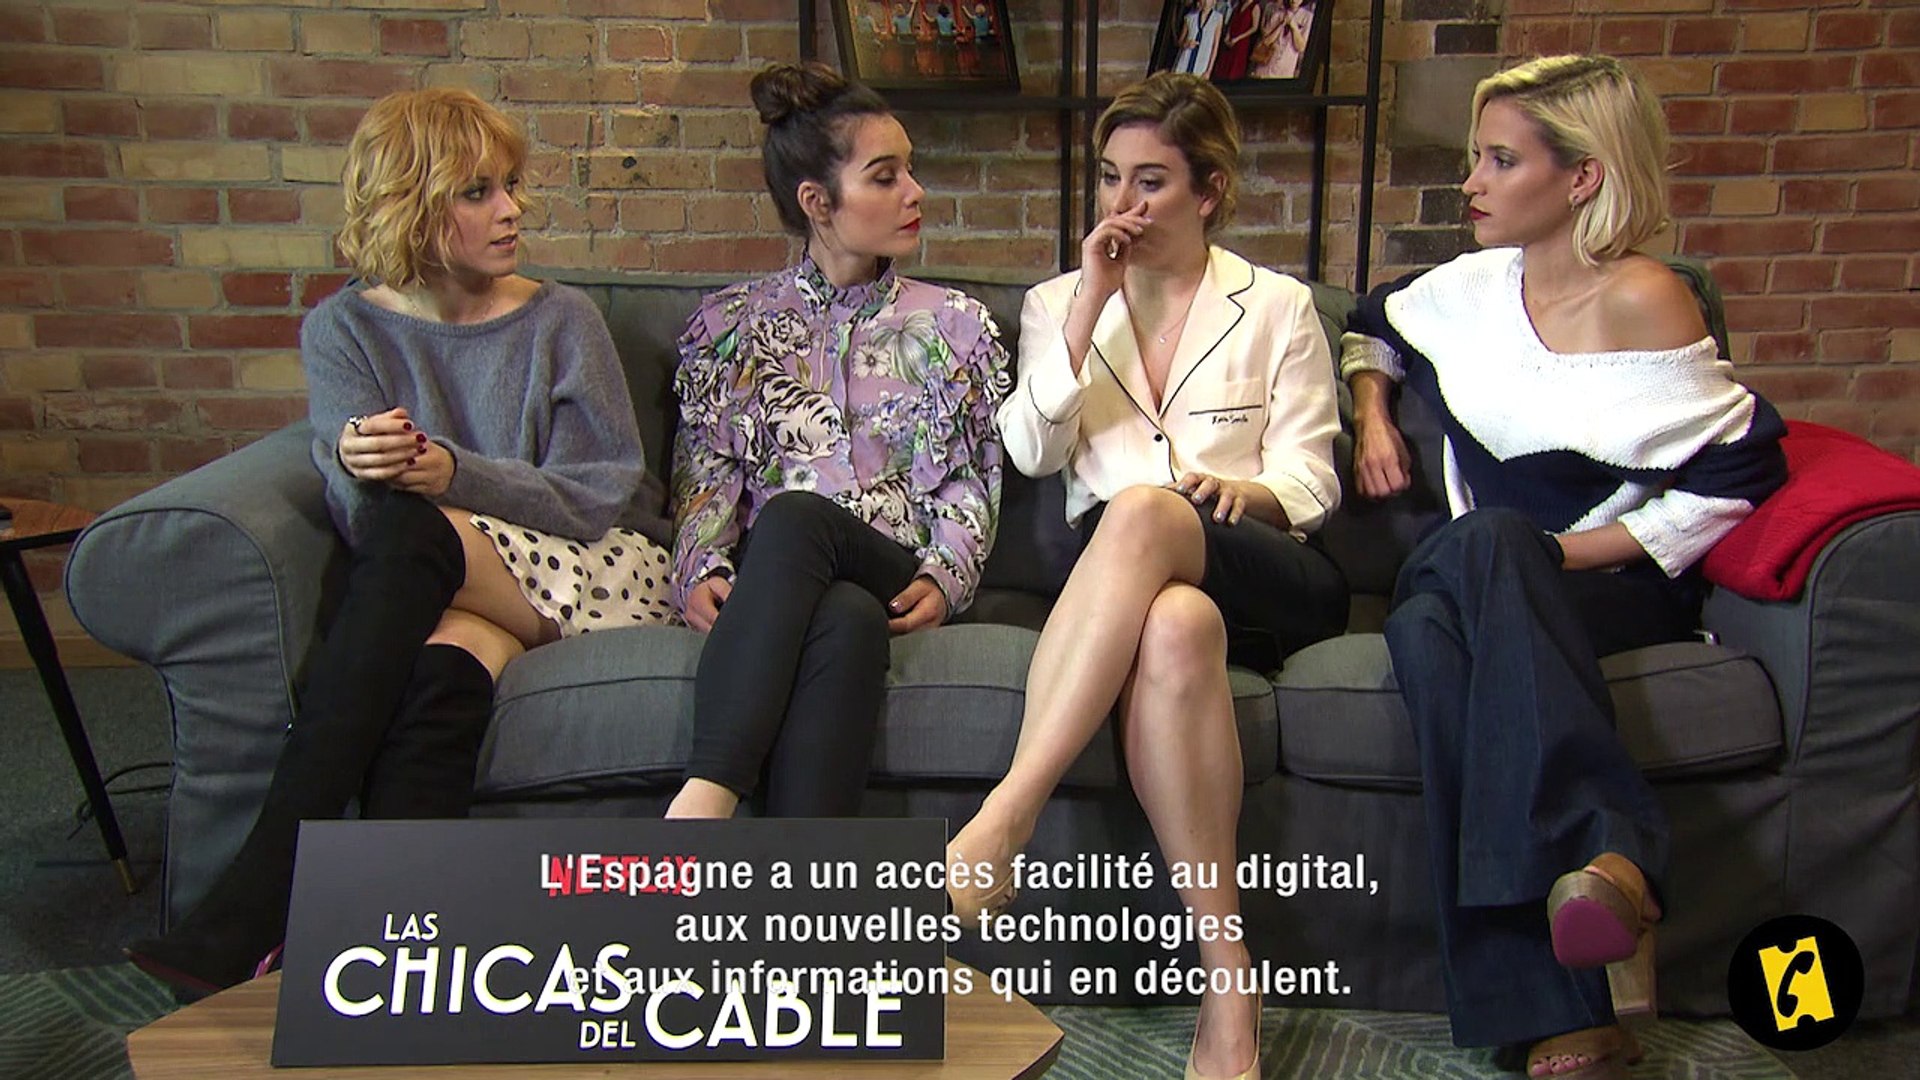 Las Chicas Del Cable : C&#039;est quoi cette série ? - Vidéo Dailymotion